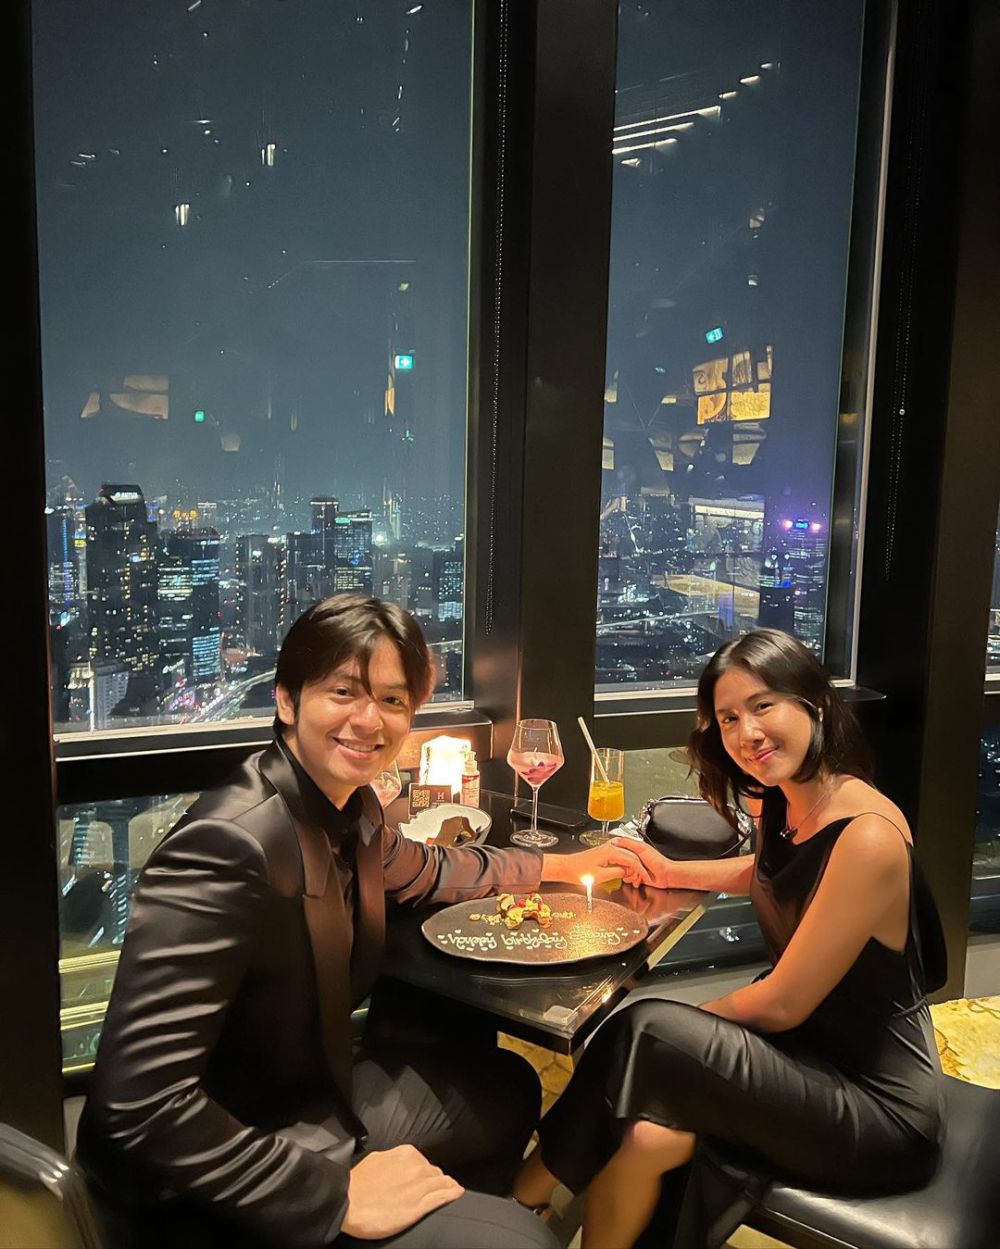 9 Pasangan Artis Dinner Romantis di Restoran Mewah, View Kece